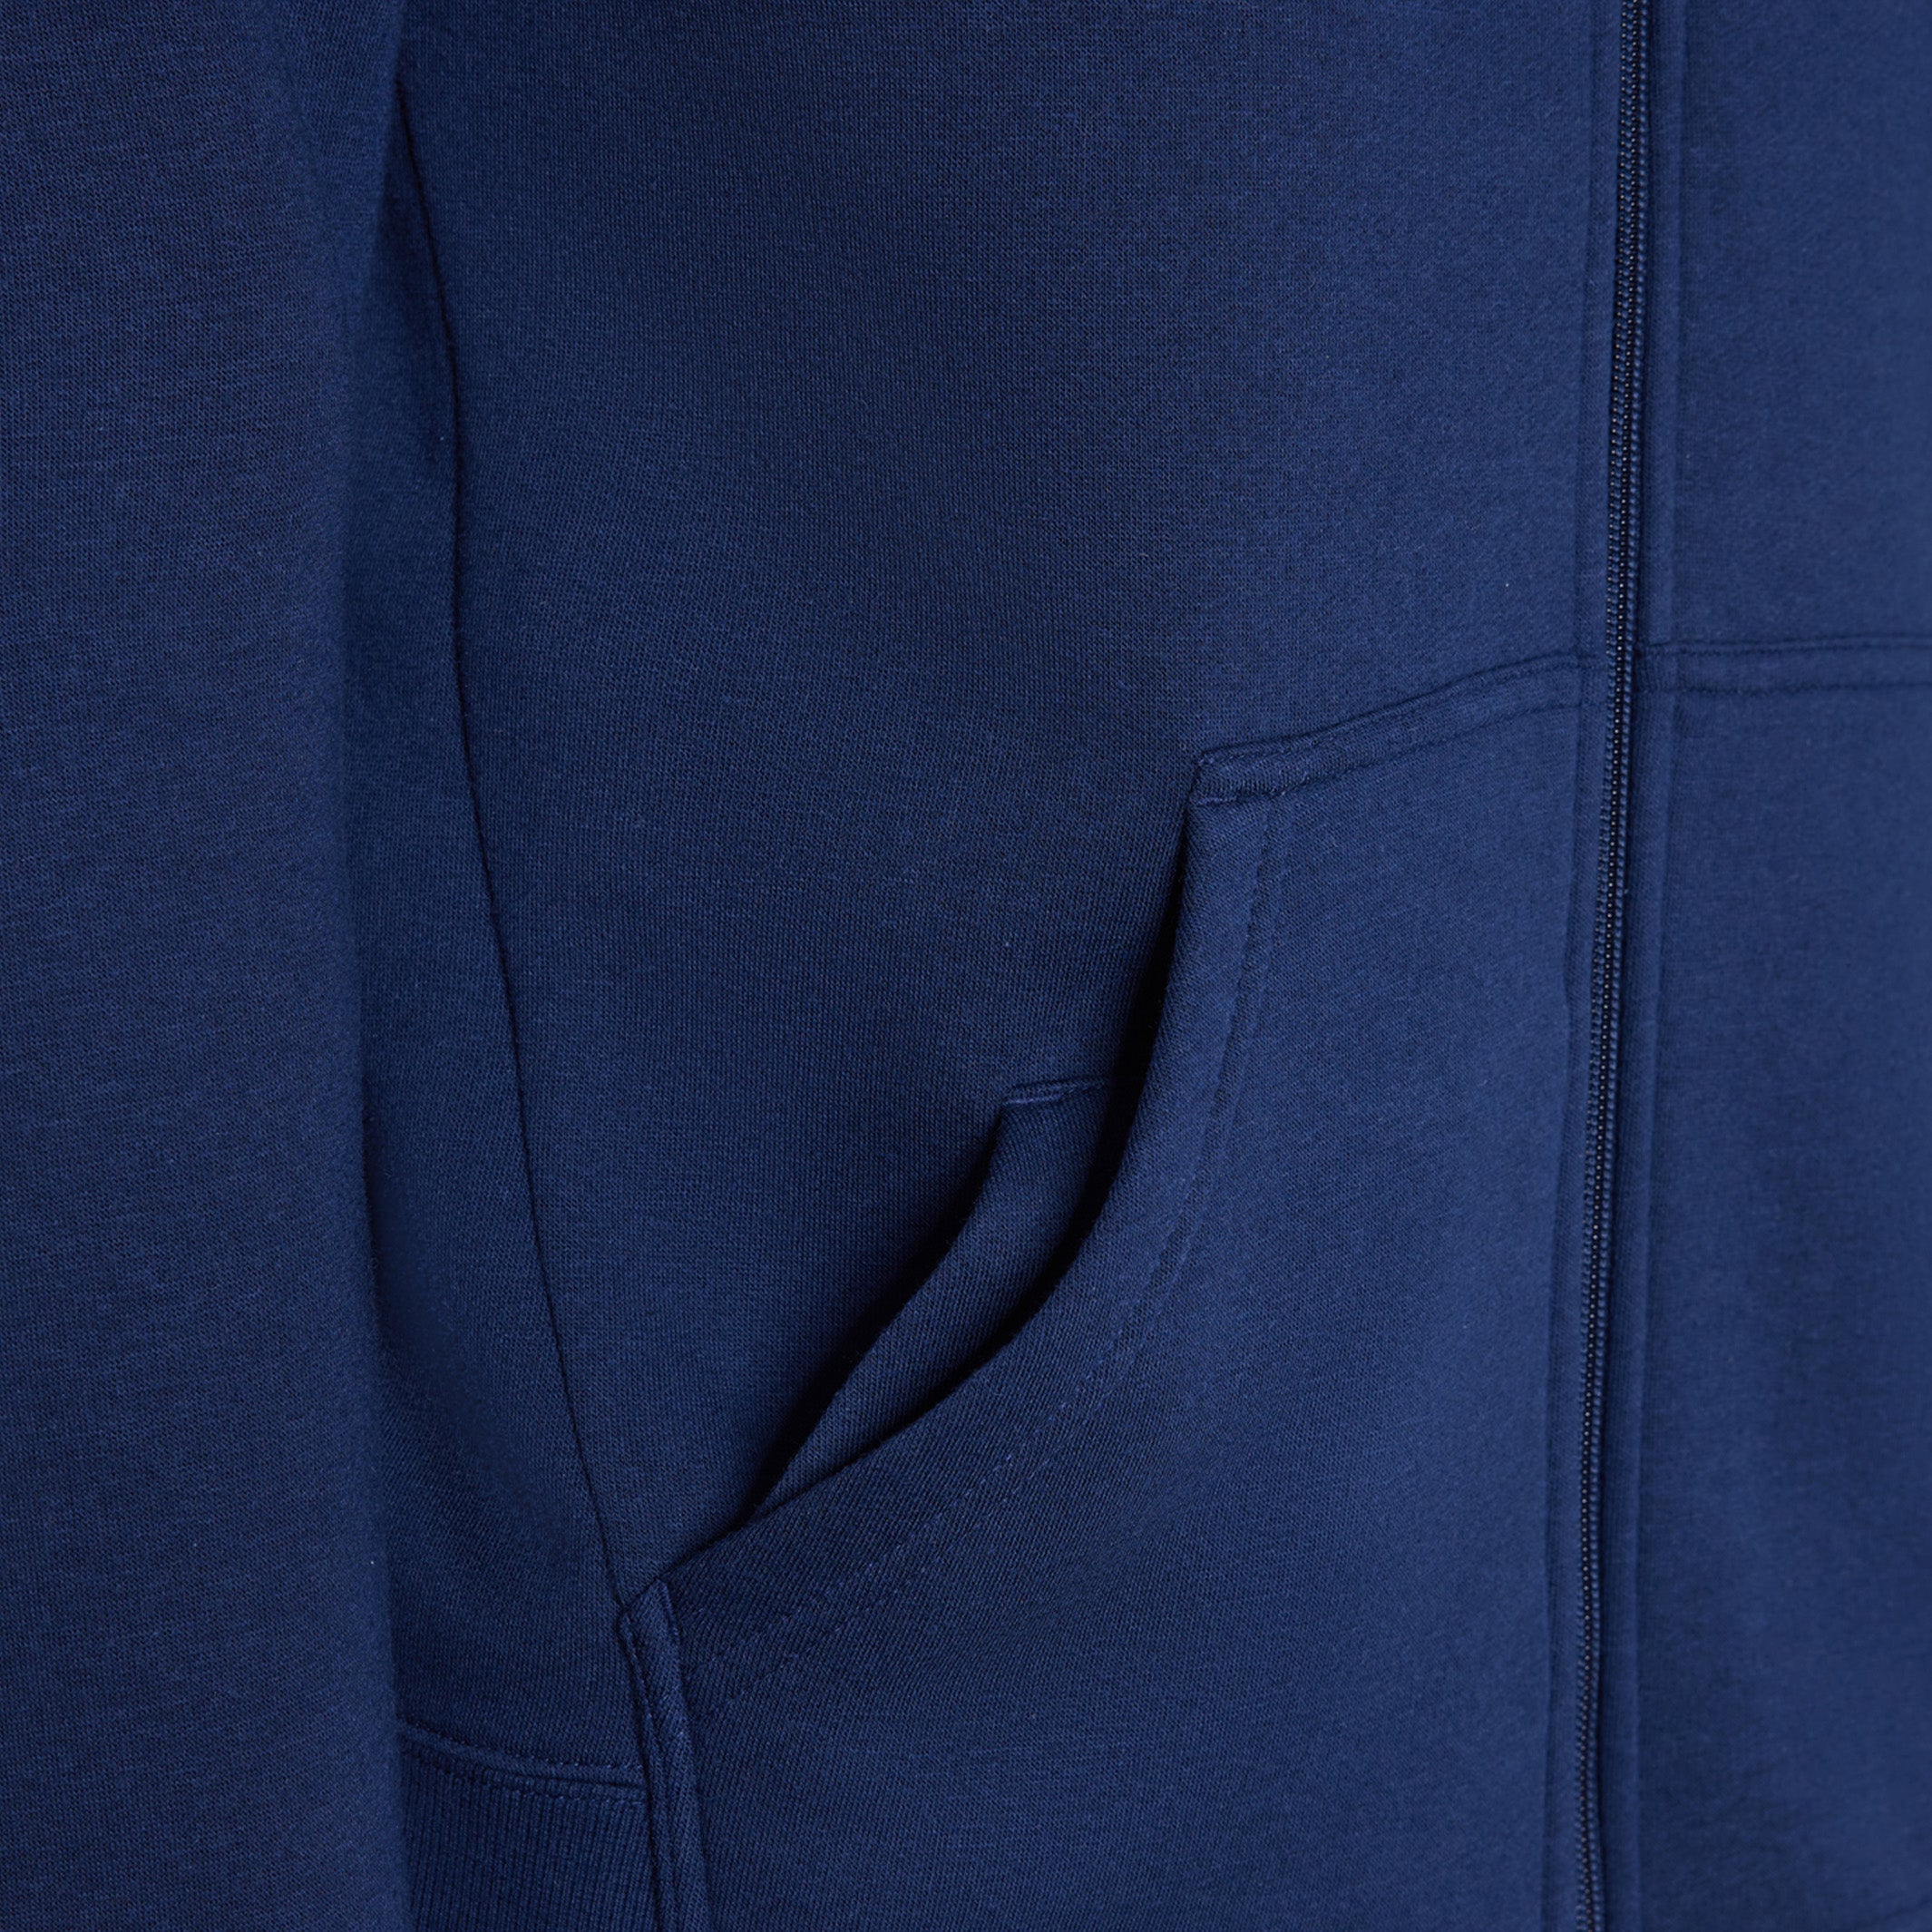 Australian Open Navy Hoodie Men's Sweatshirt with Pocket Detail View